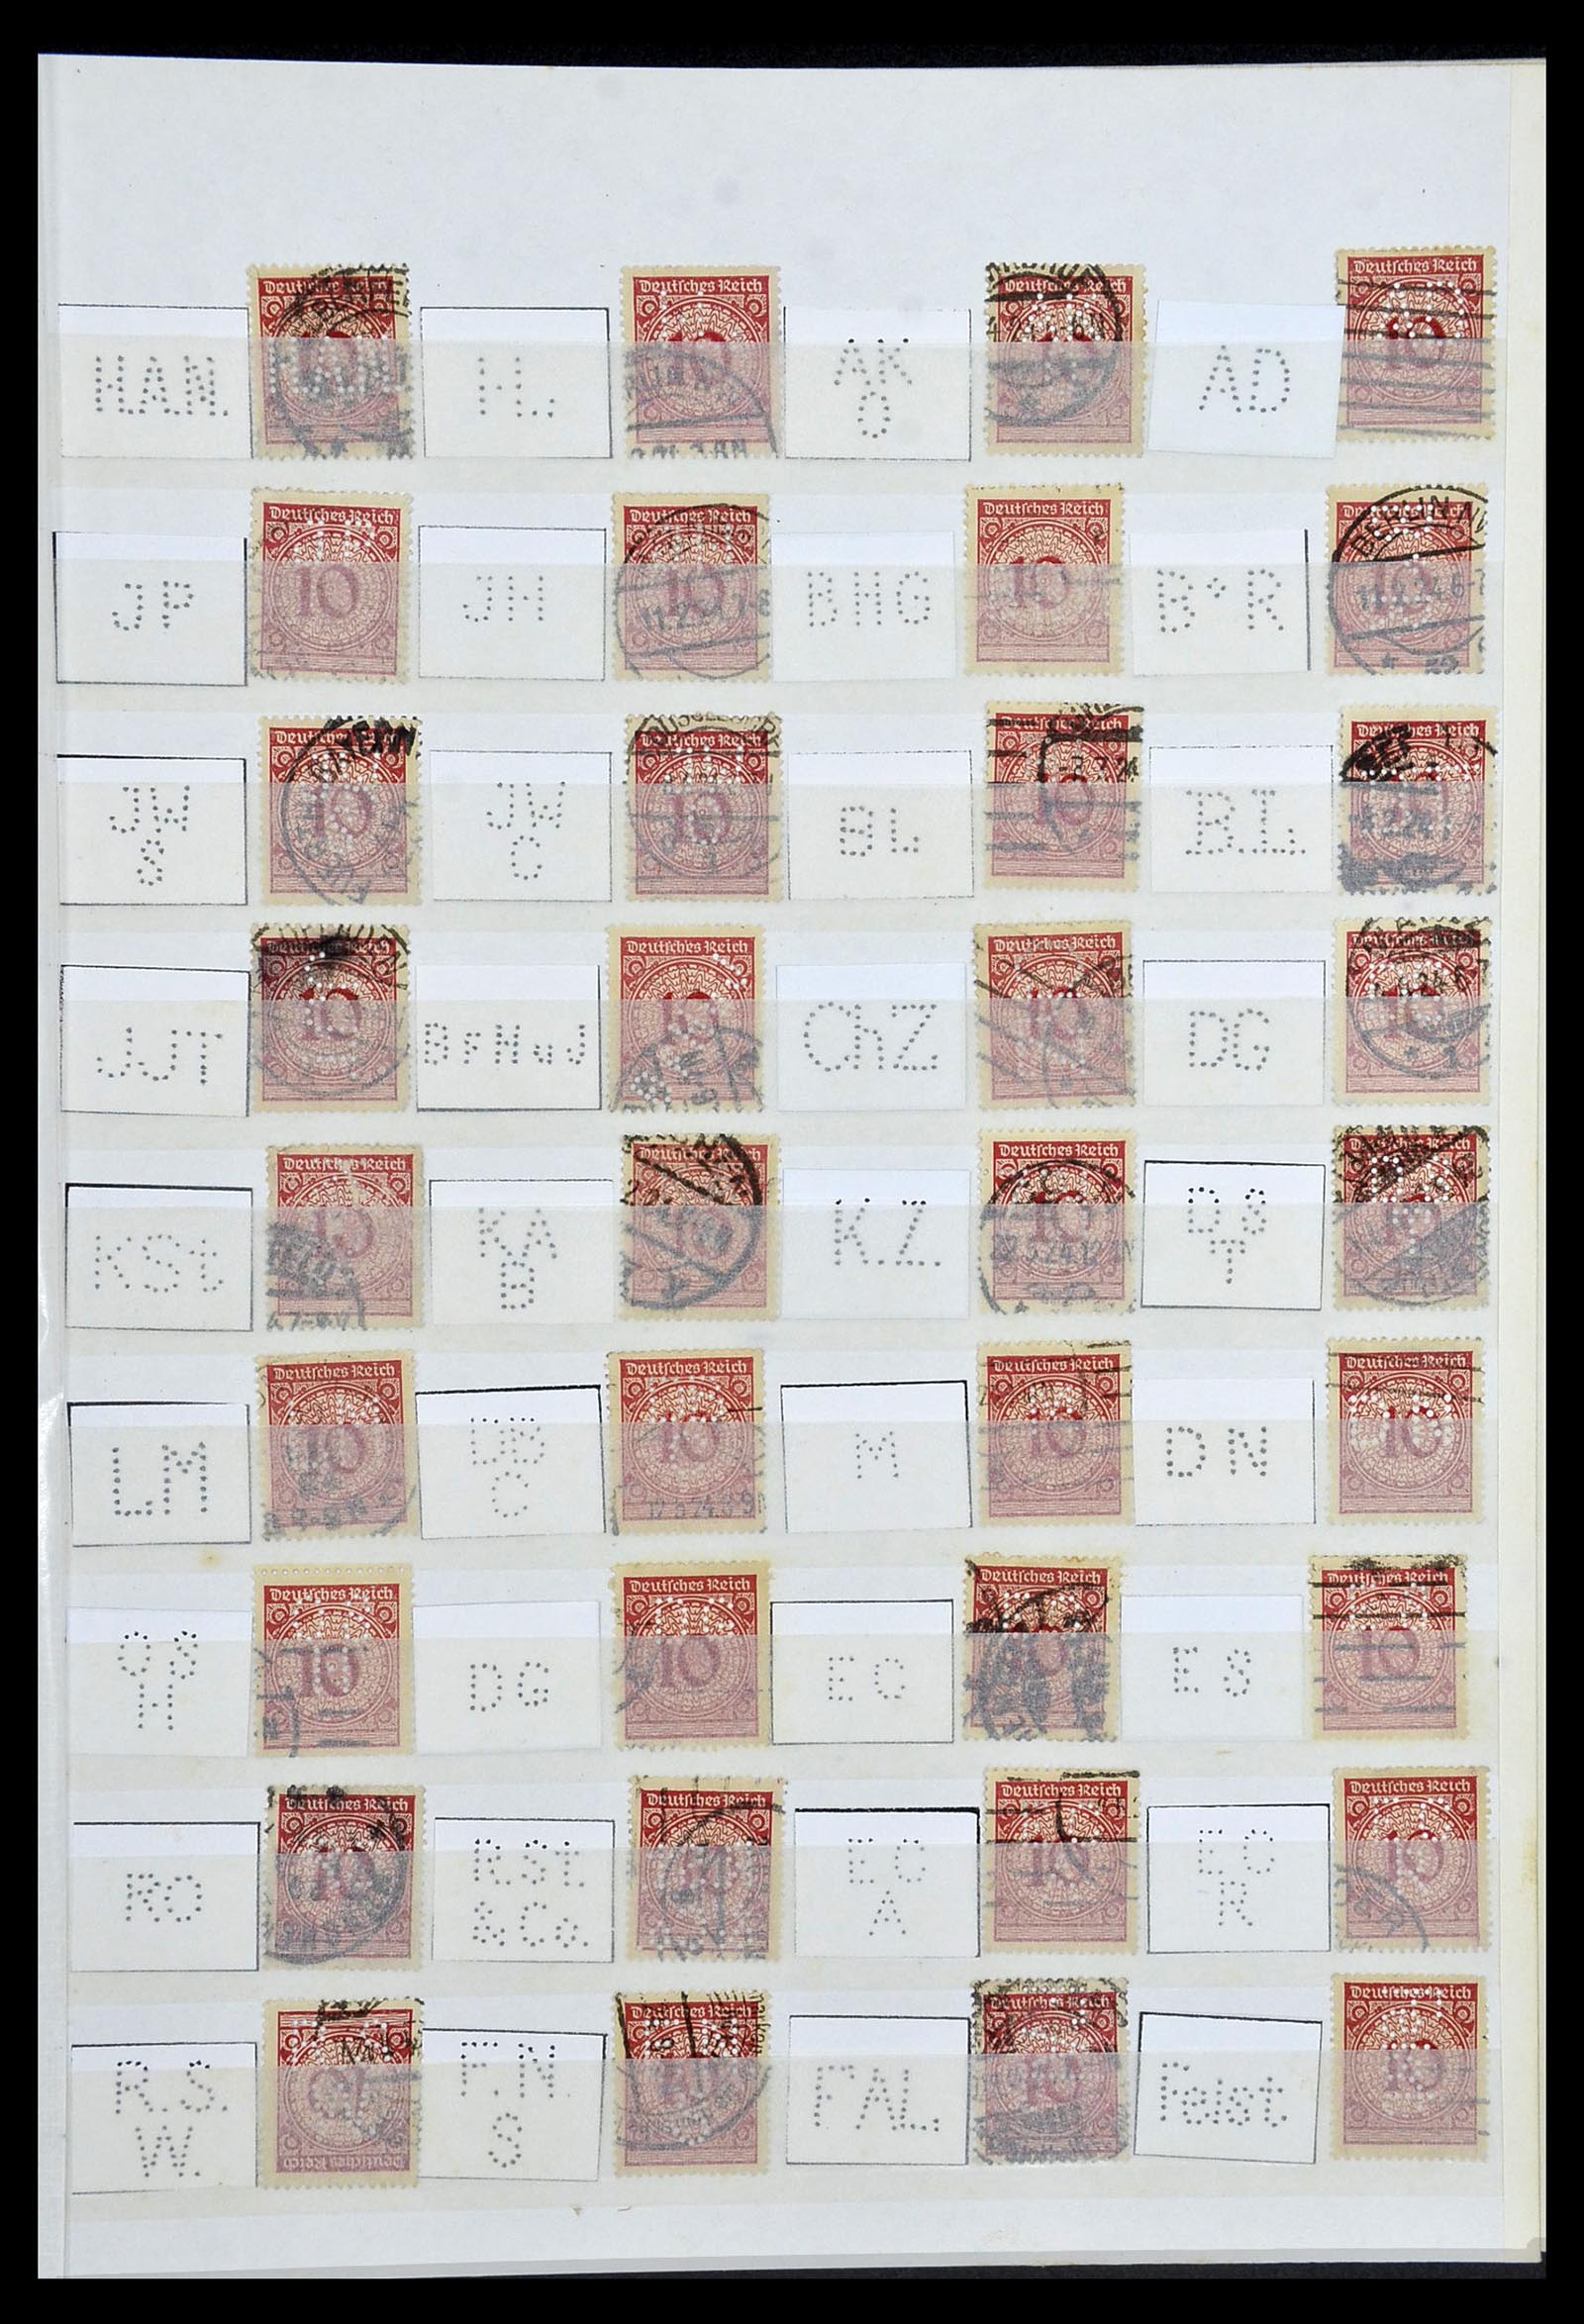 34071 007 - Stamp collection 34071 German Reich perfins 1923-1930.